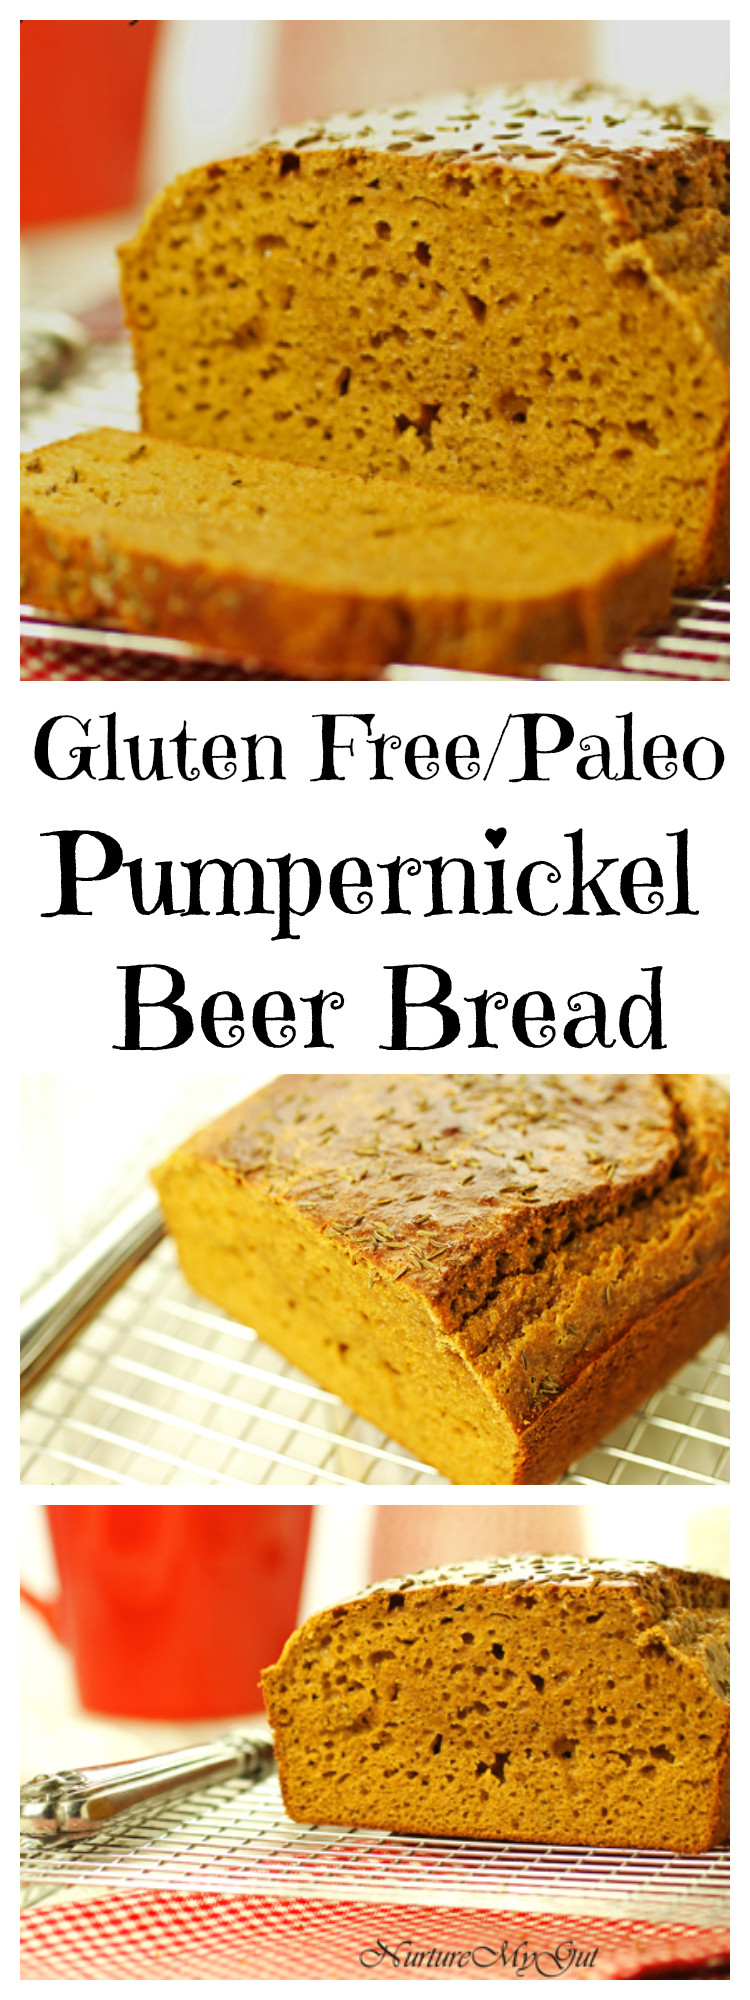 Gluten Free Pumpernickel Bread
 Gluten Free Pumpernickel Beer Bread Grain Free Dairy Free